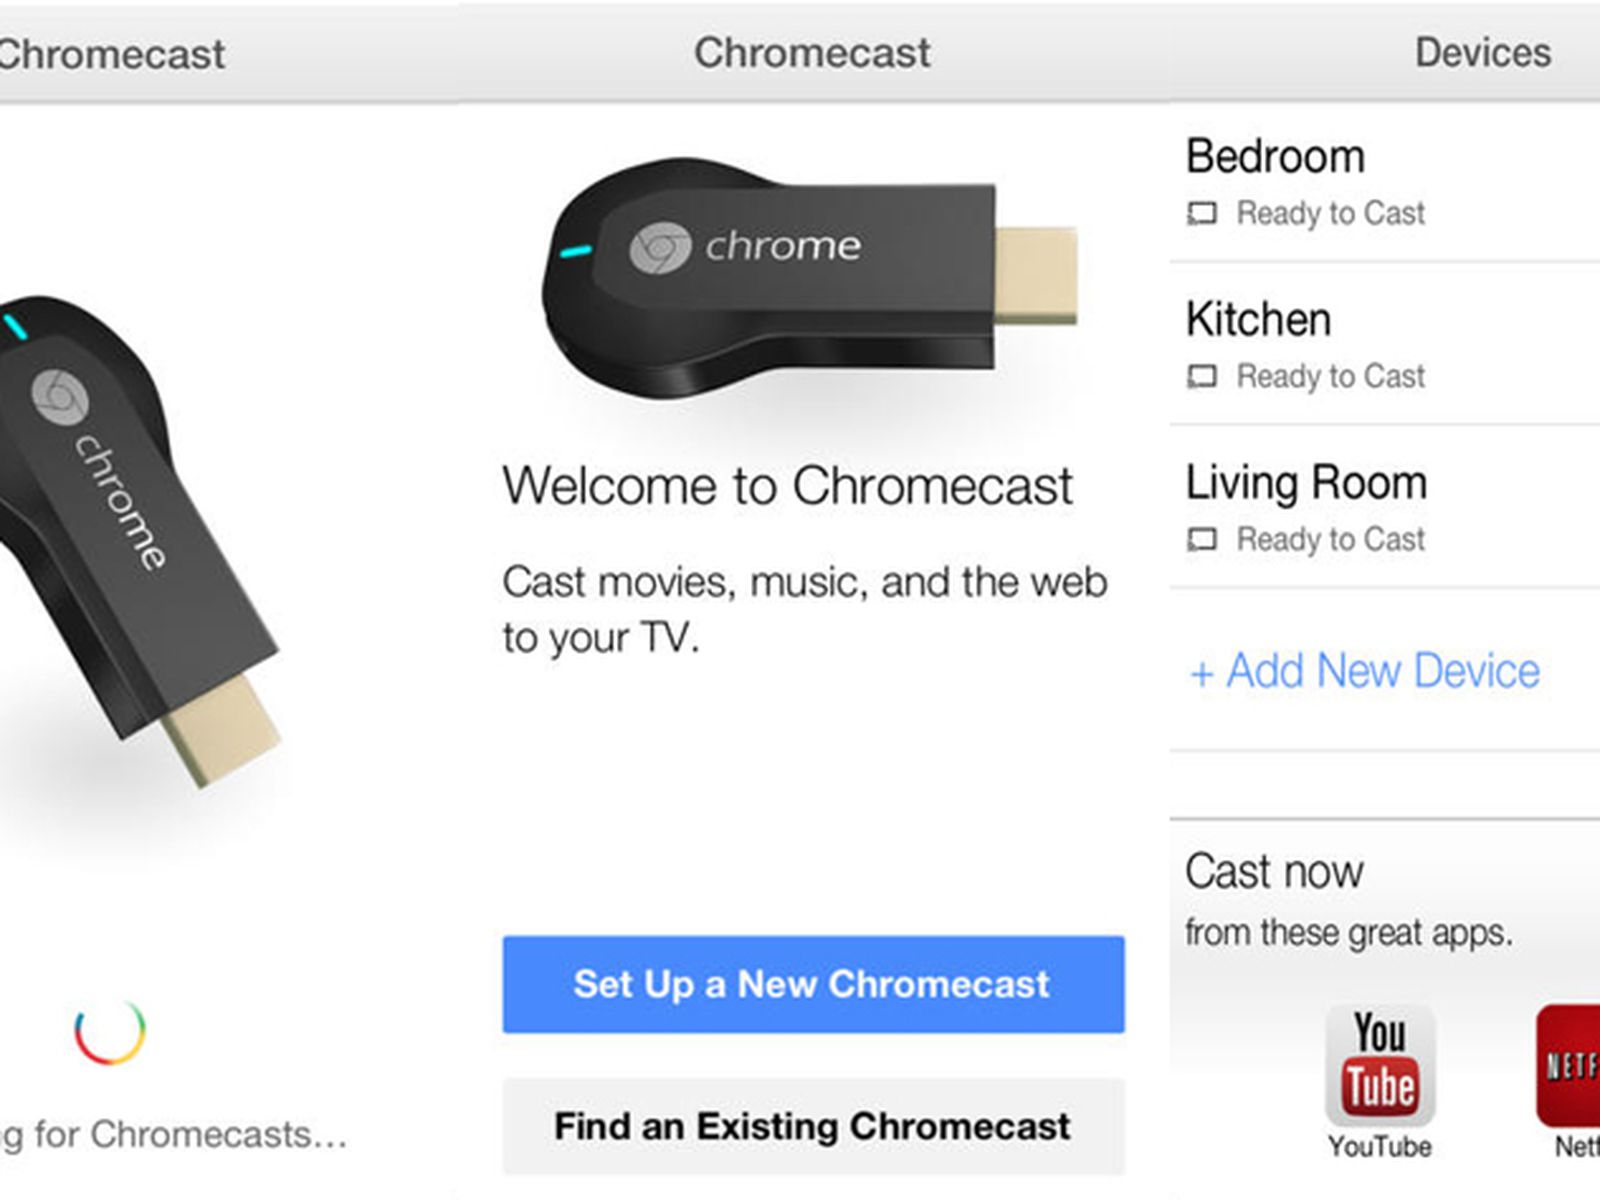 Bogholder Perth give Google Releases Chromecast App for iOS - MacRumors